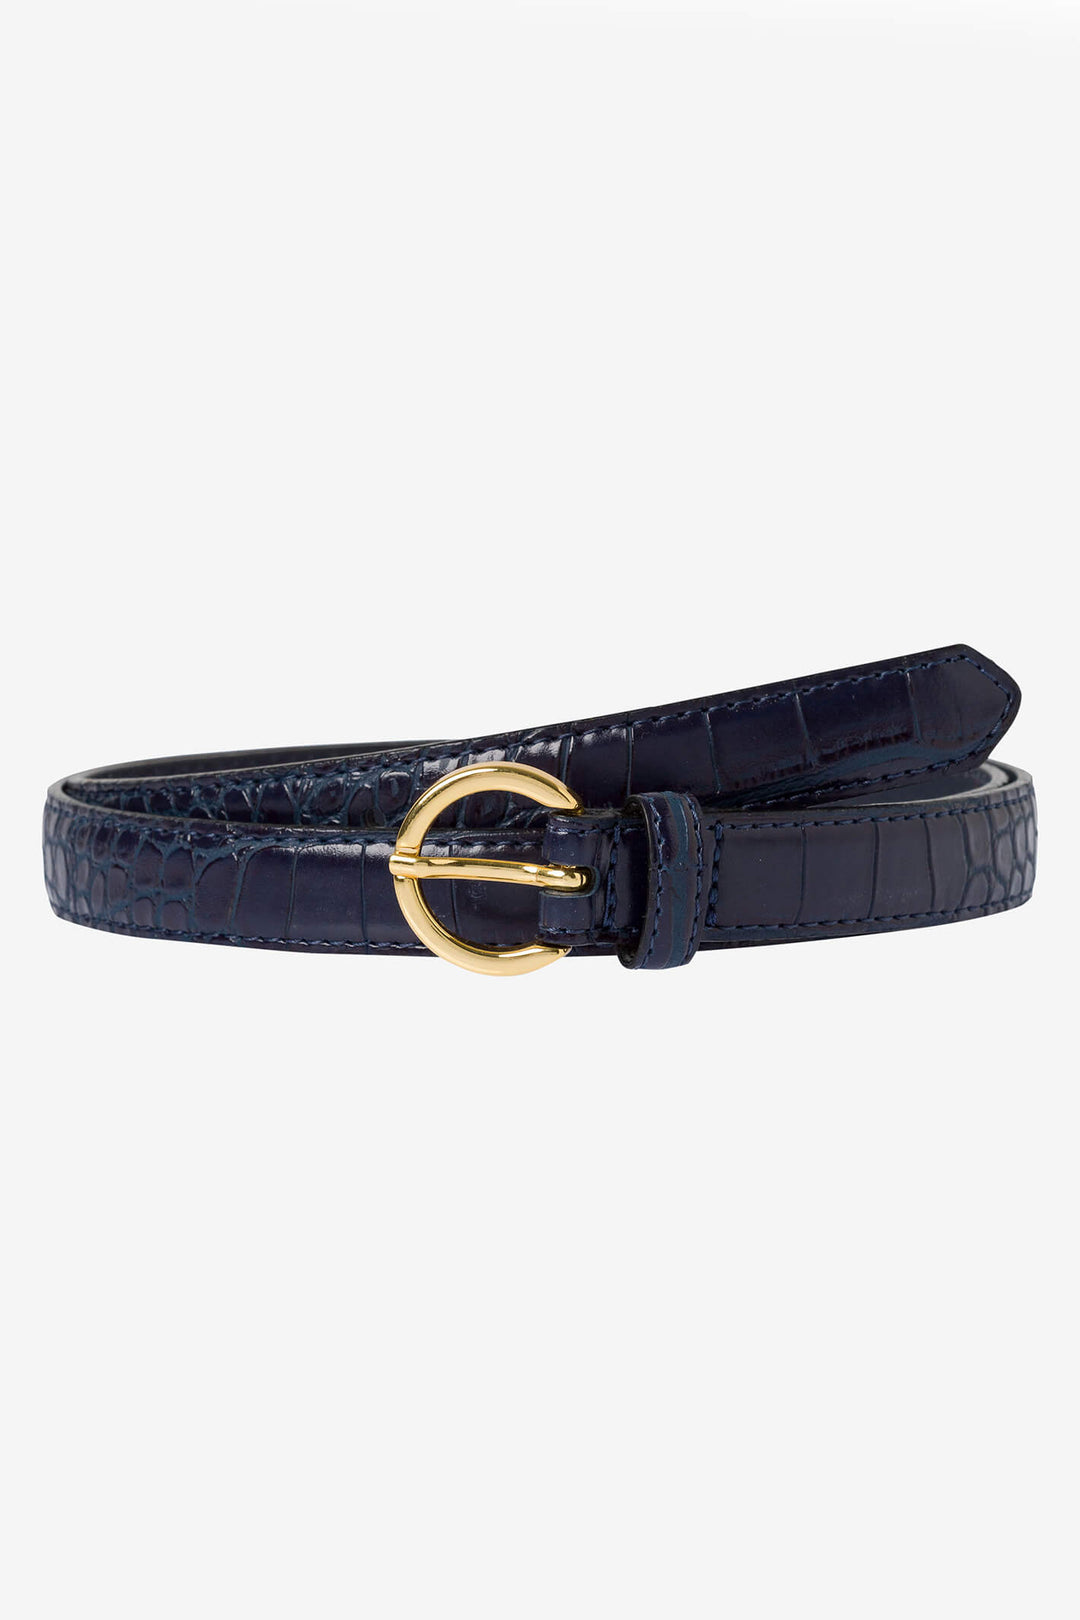 Brax Dob Gurtel 51-0867 91000990 22 Navy Leather Belt - Shirley Allum Boutique